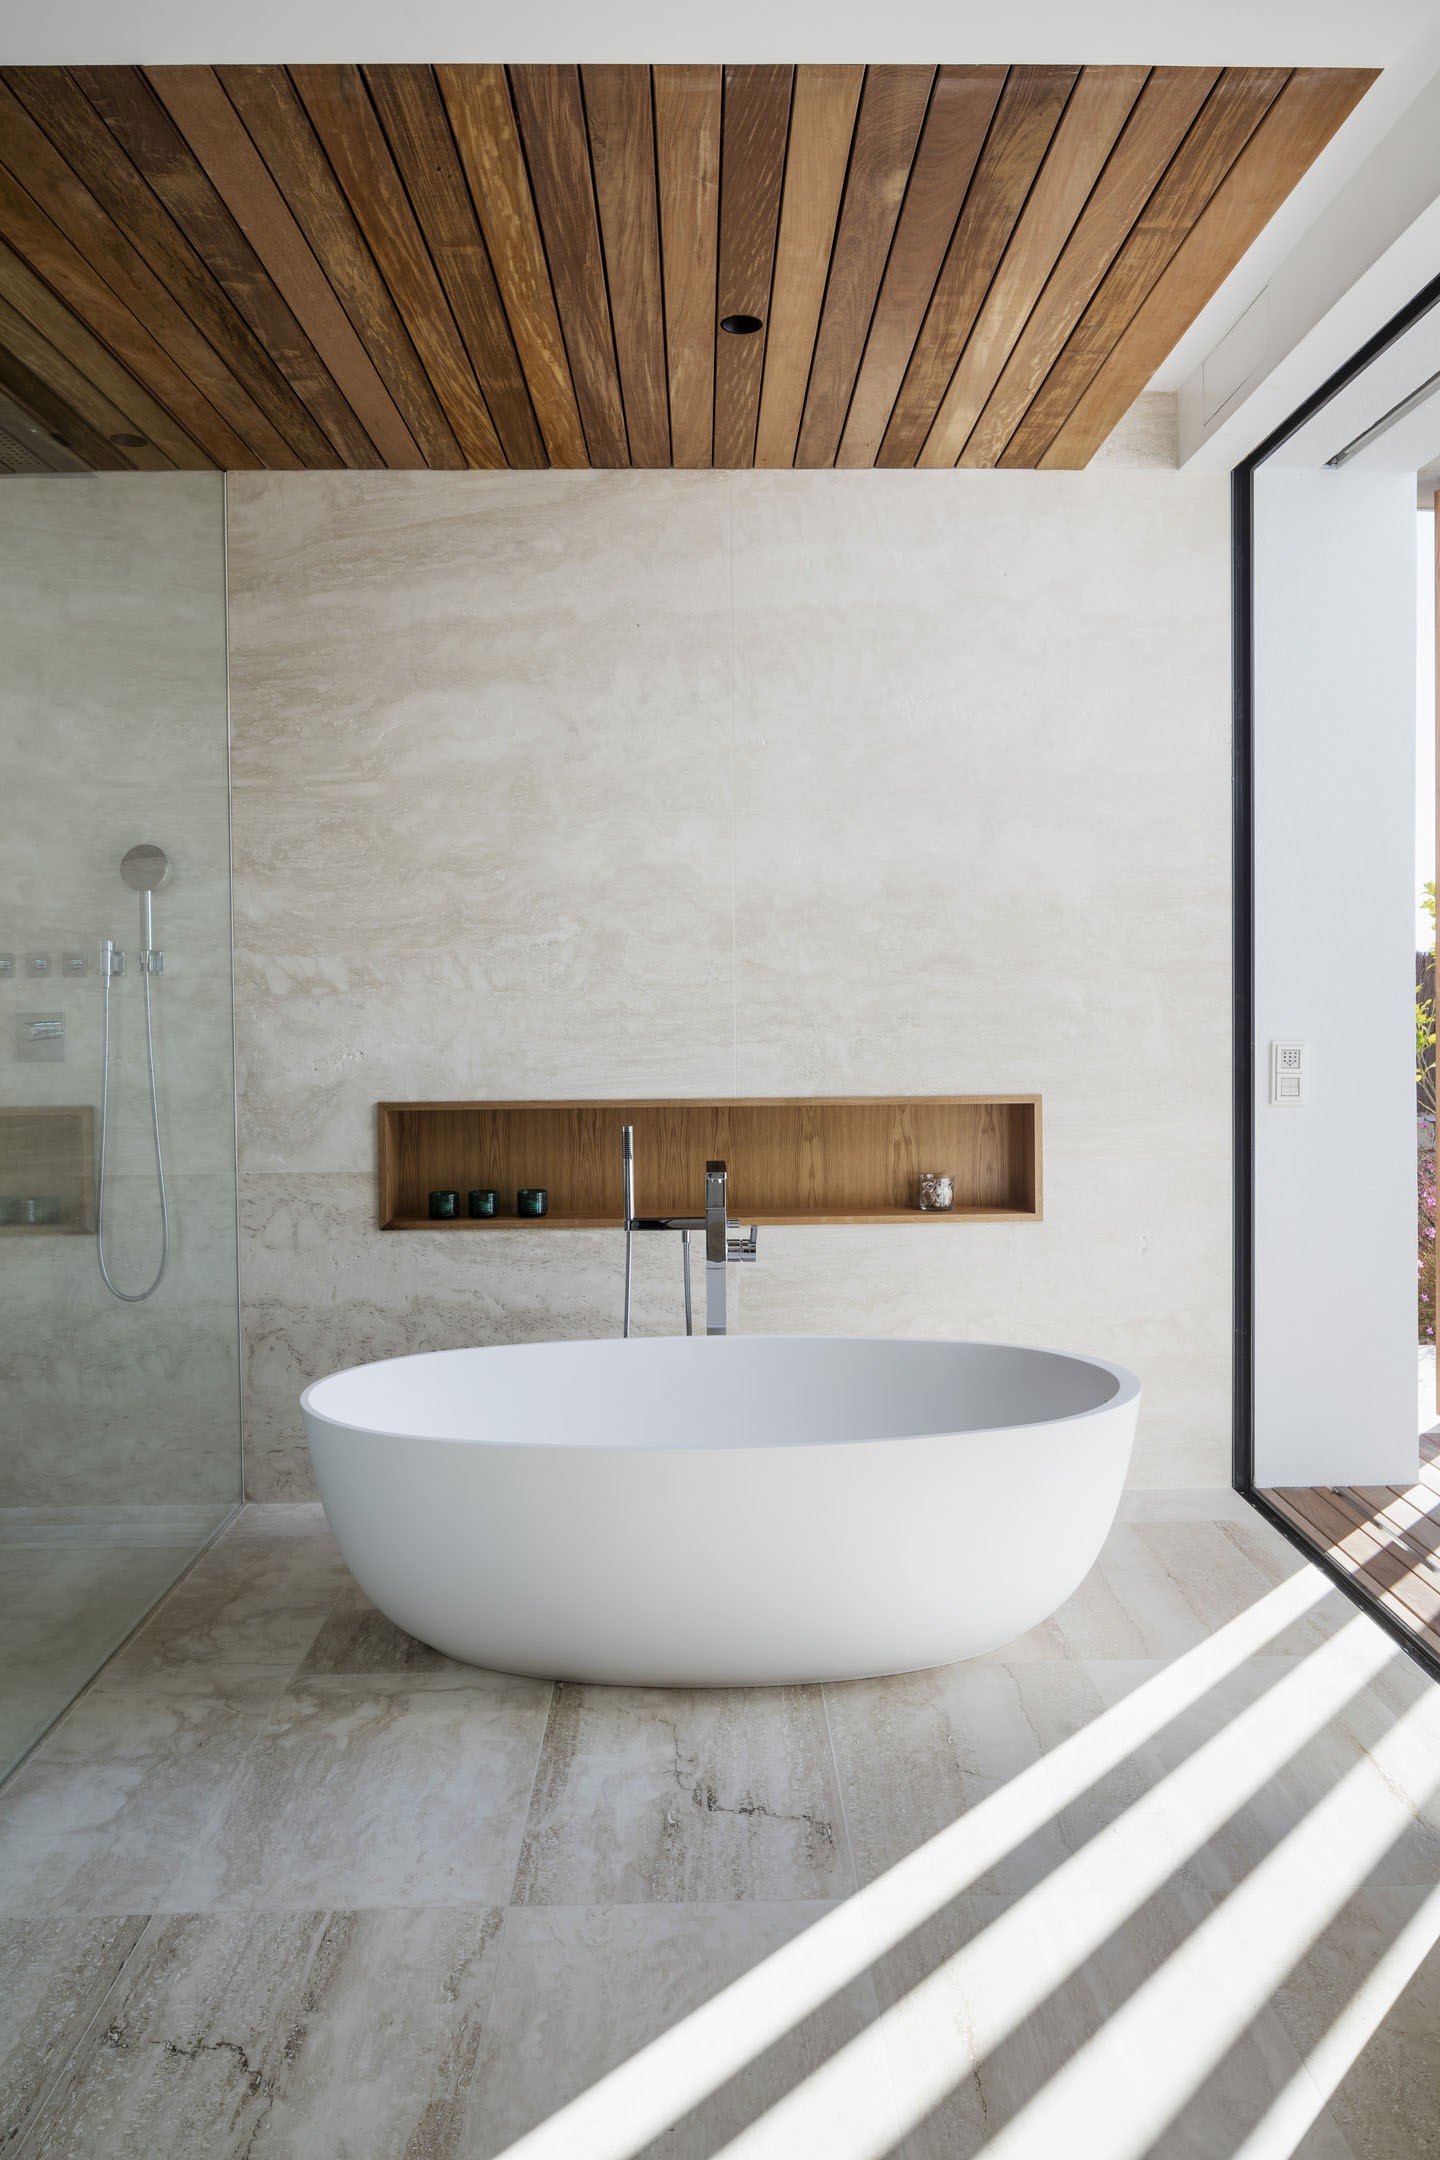 Décor do dia: sala de banho minimalista com teto de madeira (Foto: Divulgação)